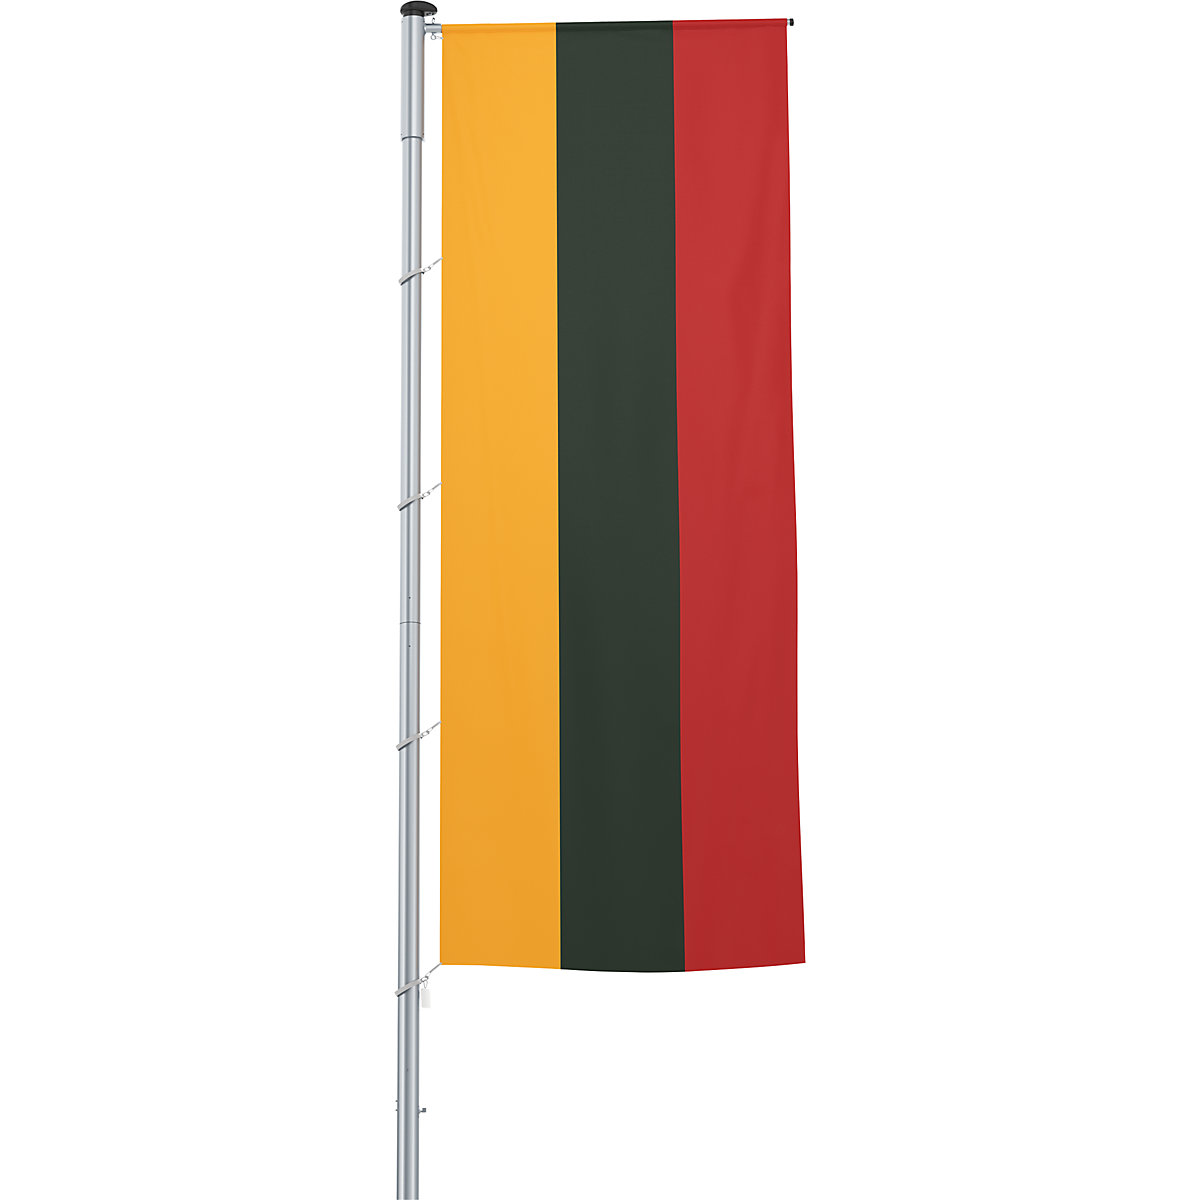 Mannus – Bandera con pluma/bandera del país, formato 1,2 x 3 m, Lituania